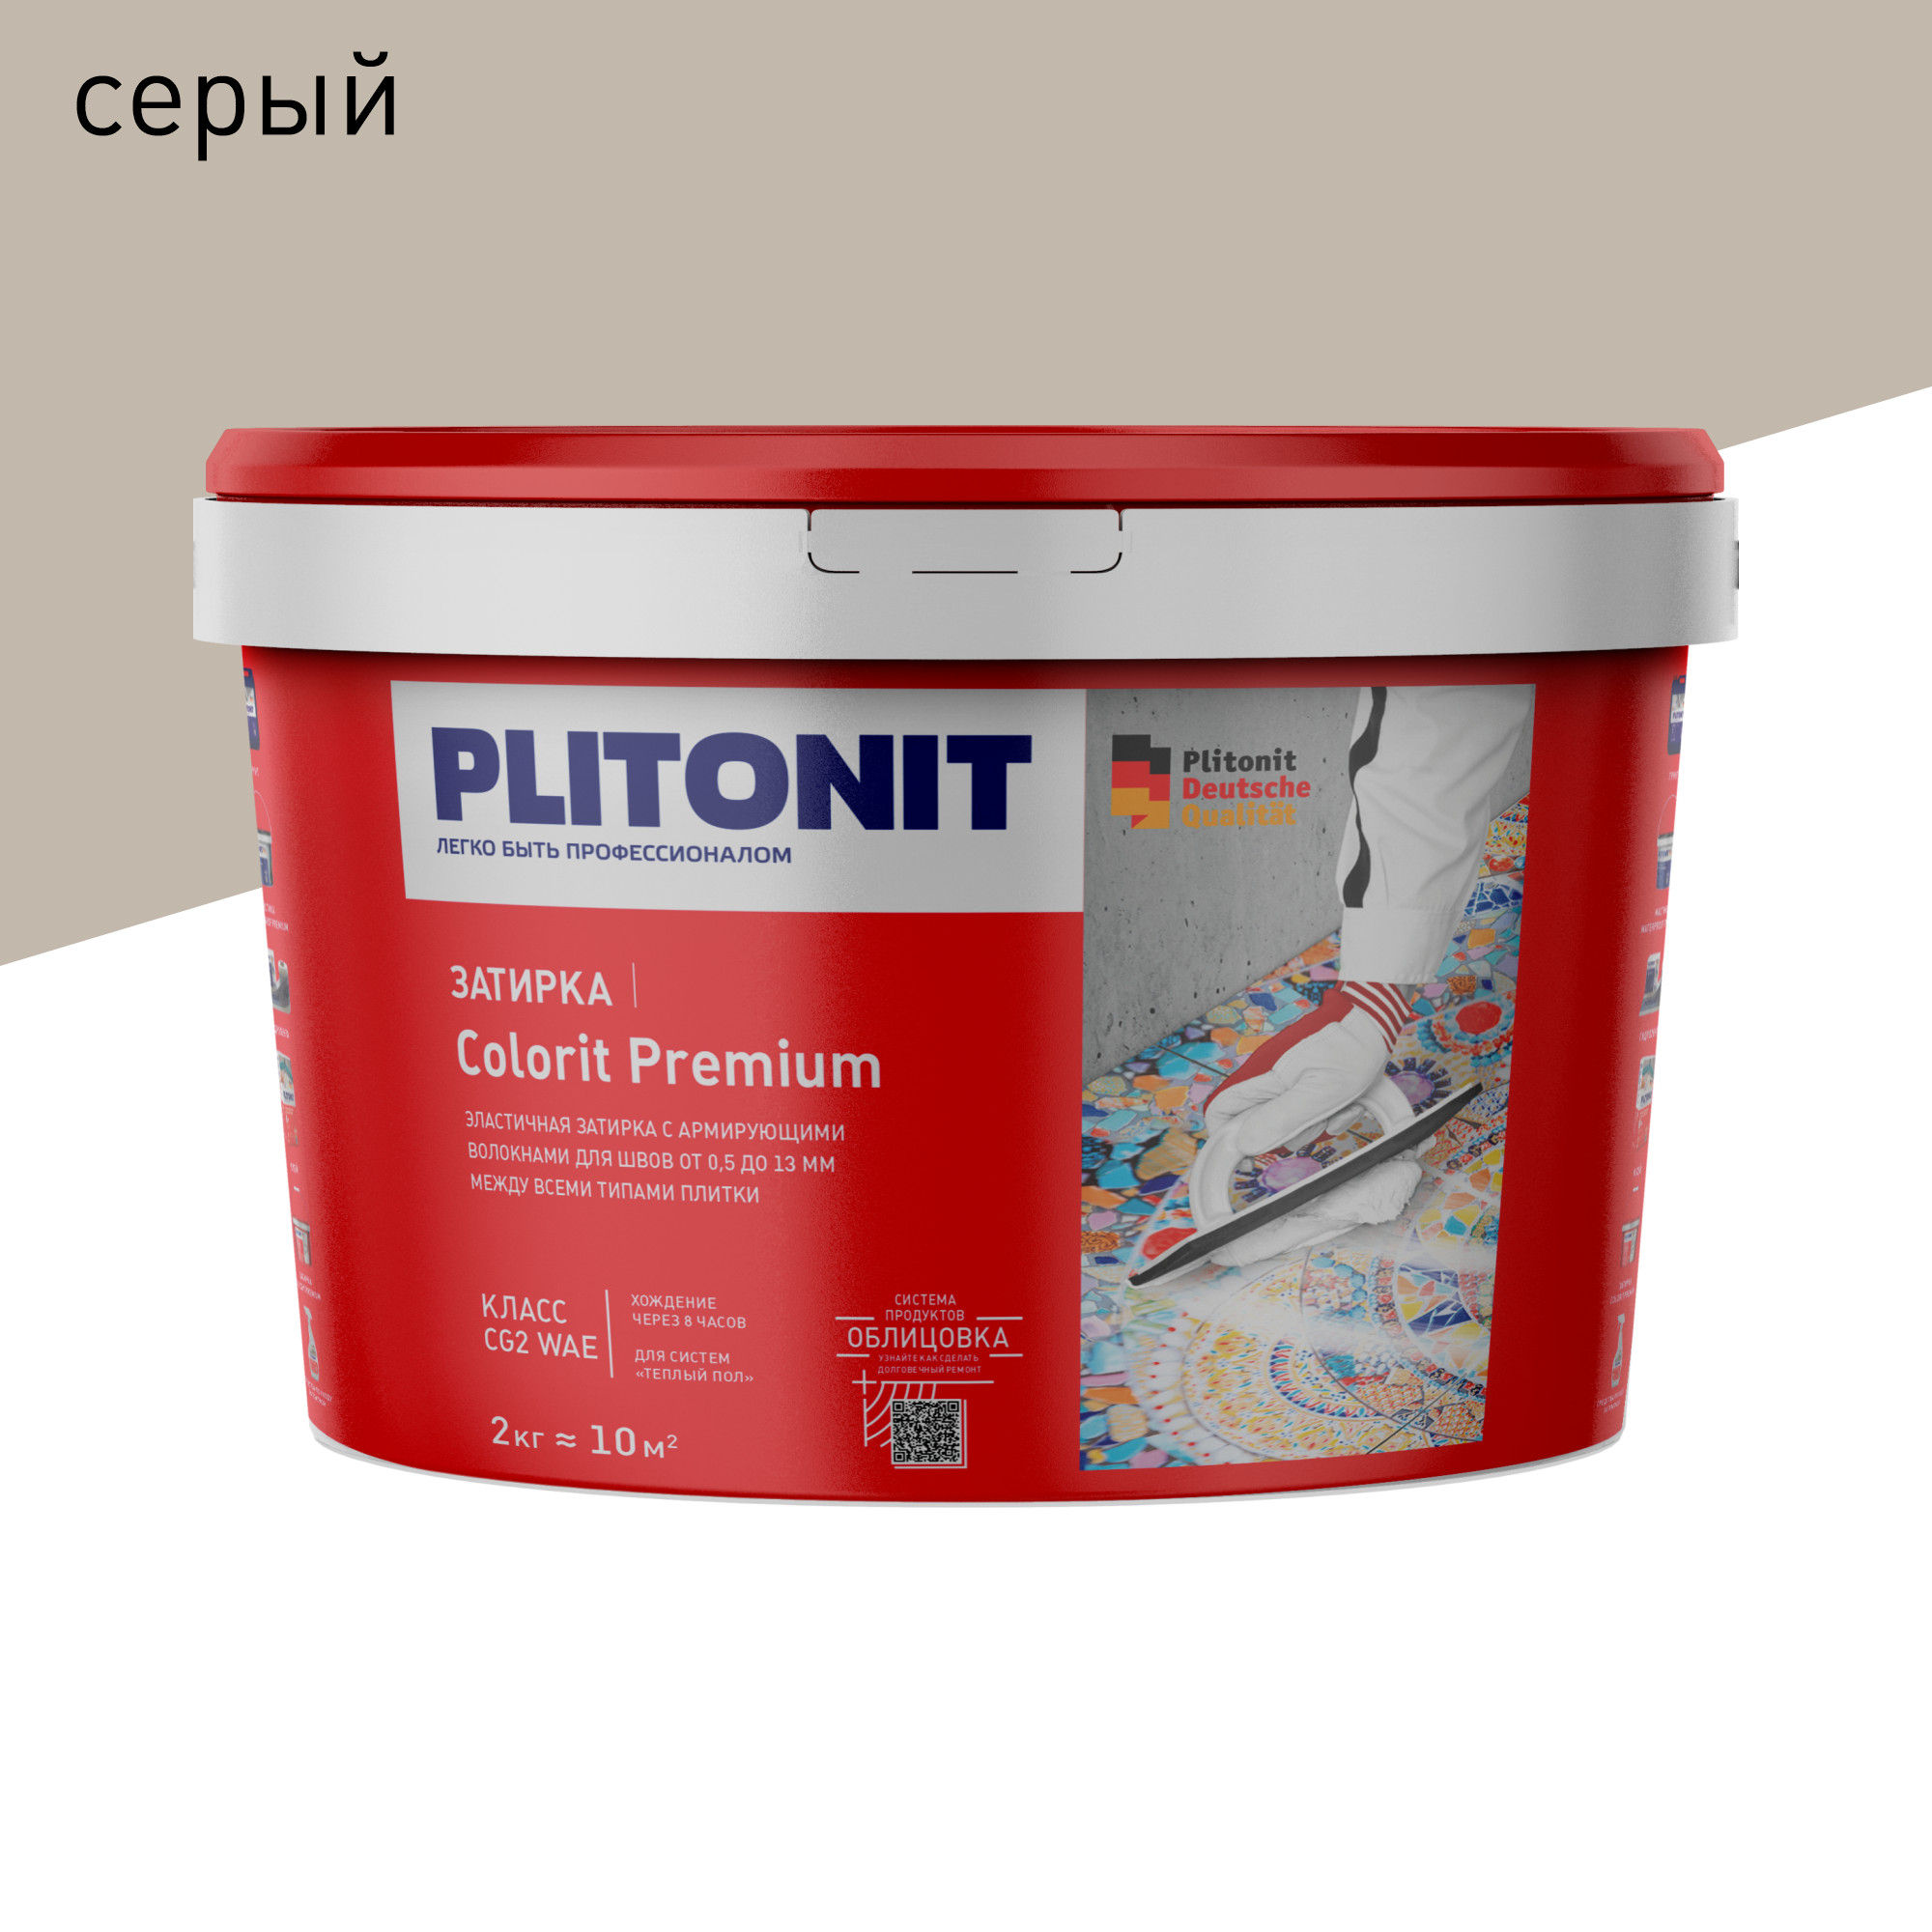 Затирка PLITONIT Colorit Premium серая 2 кг затирка эпоксидная plitonit colorit easyfill серебристо серая 2 кг